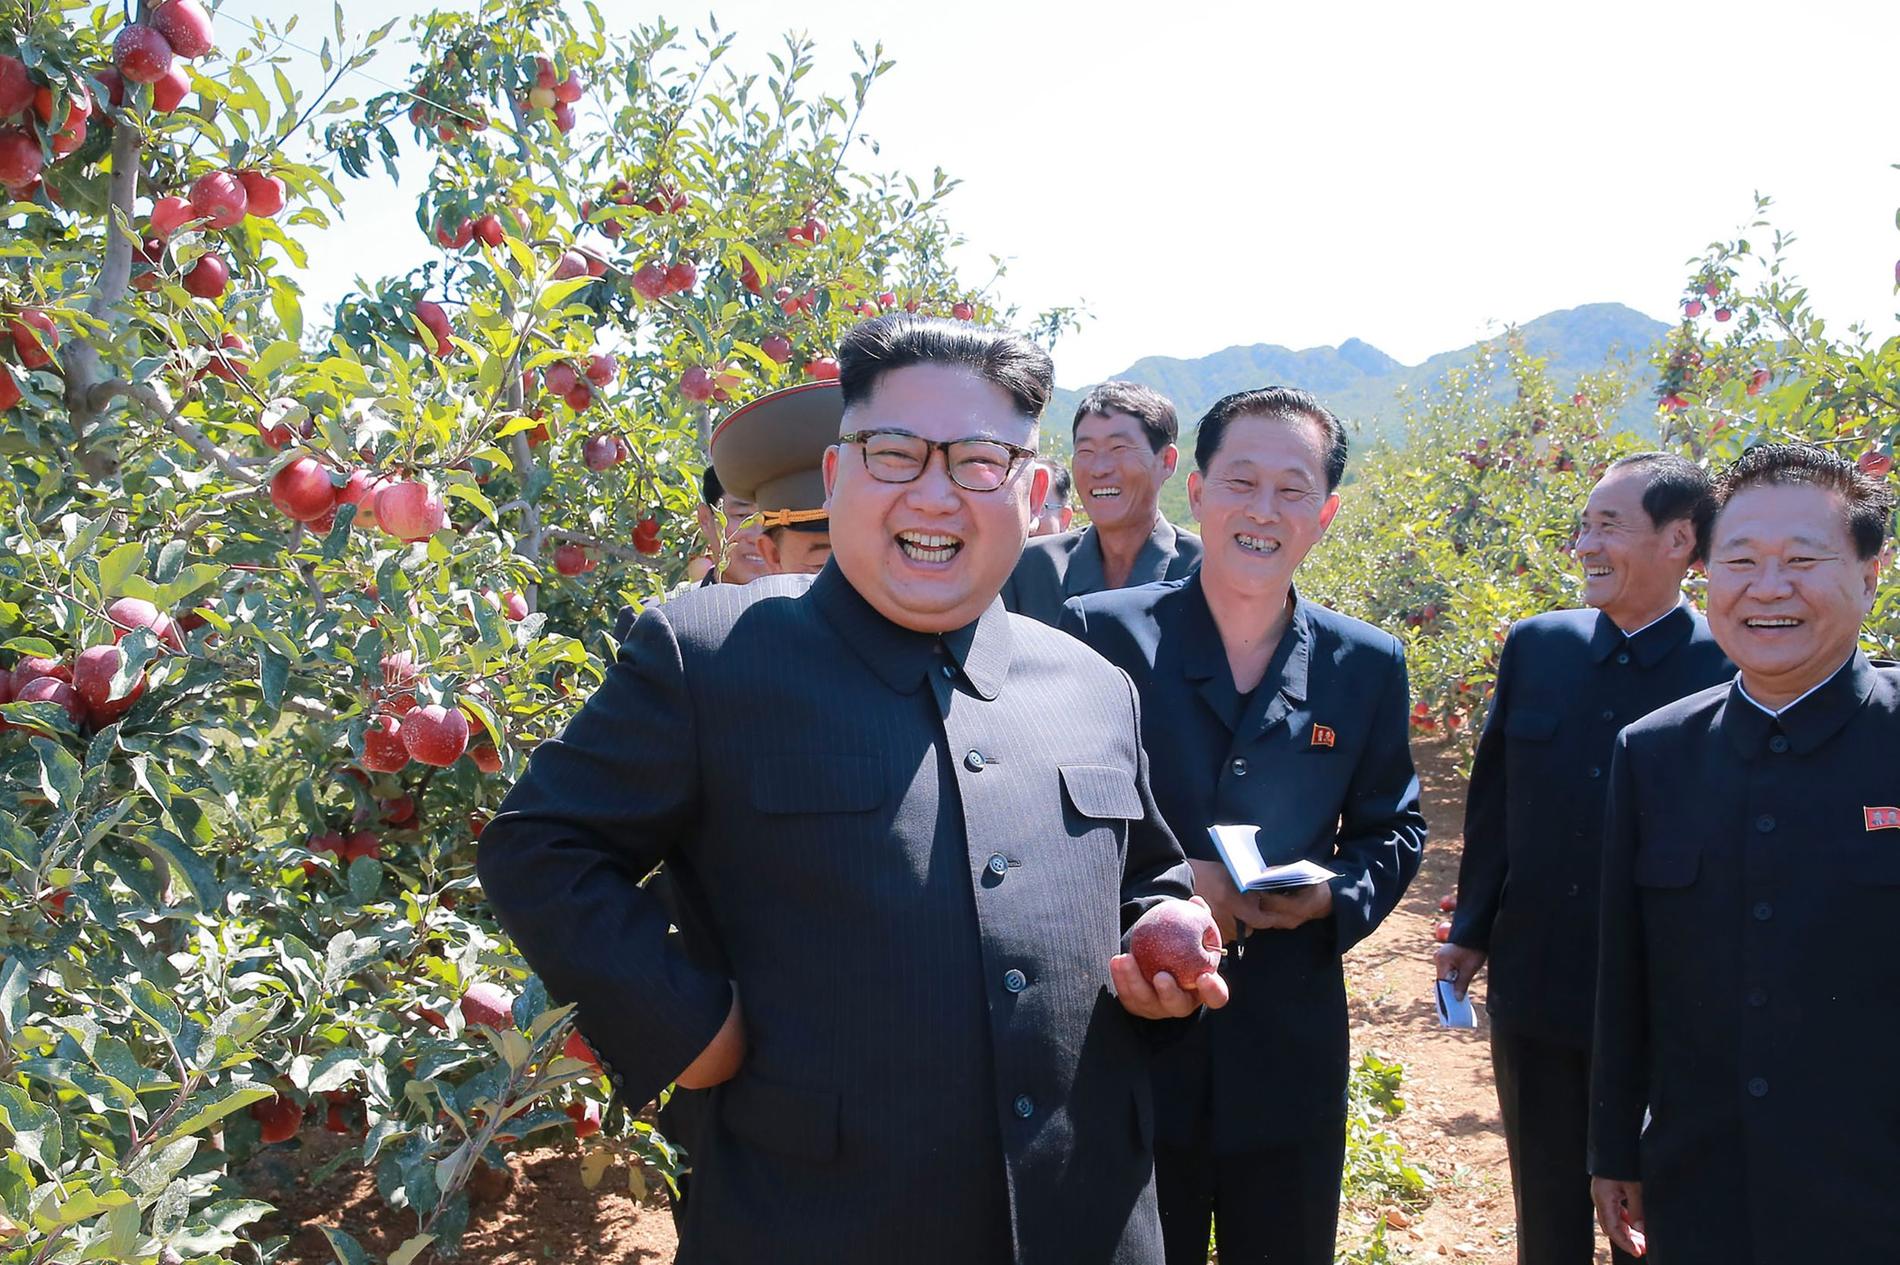 Tidigare idag skickade den statliga nordkoreanska nyhetsbyrån KCNA ut bilder på Kim Jong-Un när han besöker en fruktodling i södra delen av Hwanghae-provinsen.